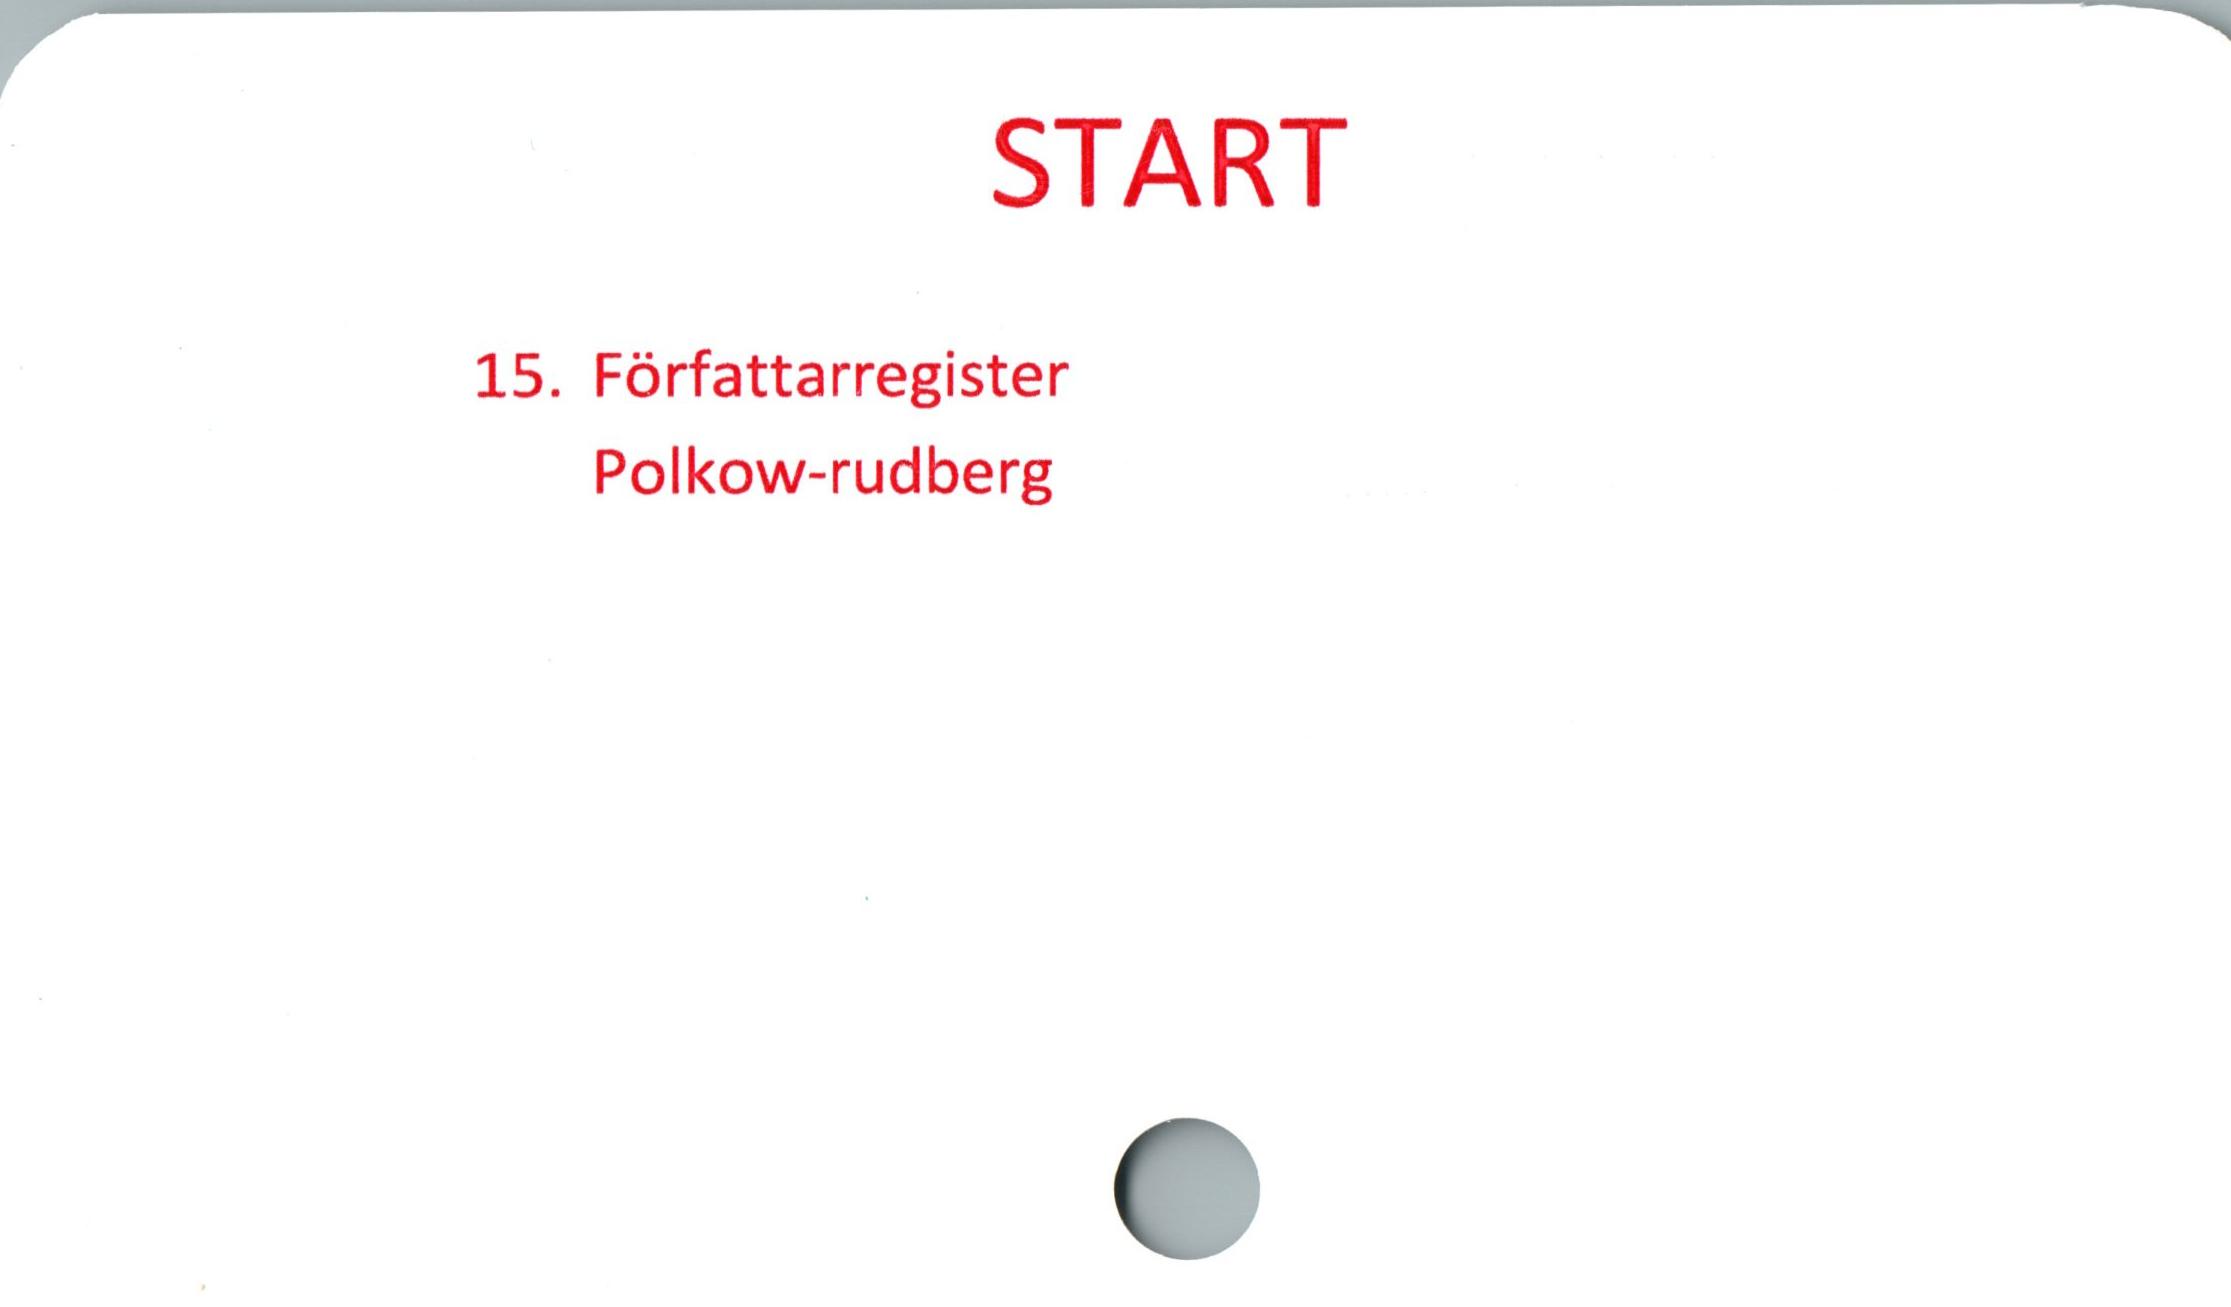  ﻿START

15. Författarregister
Polkow-rudberg